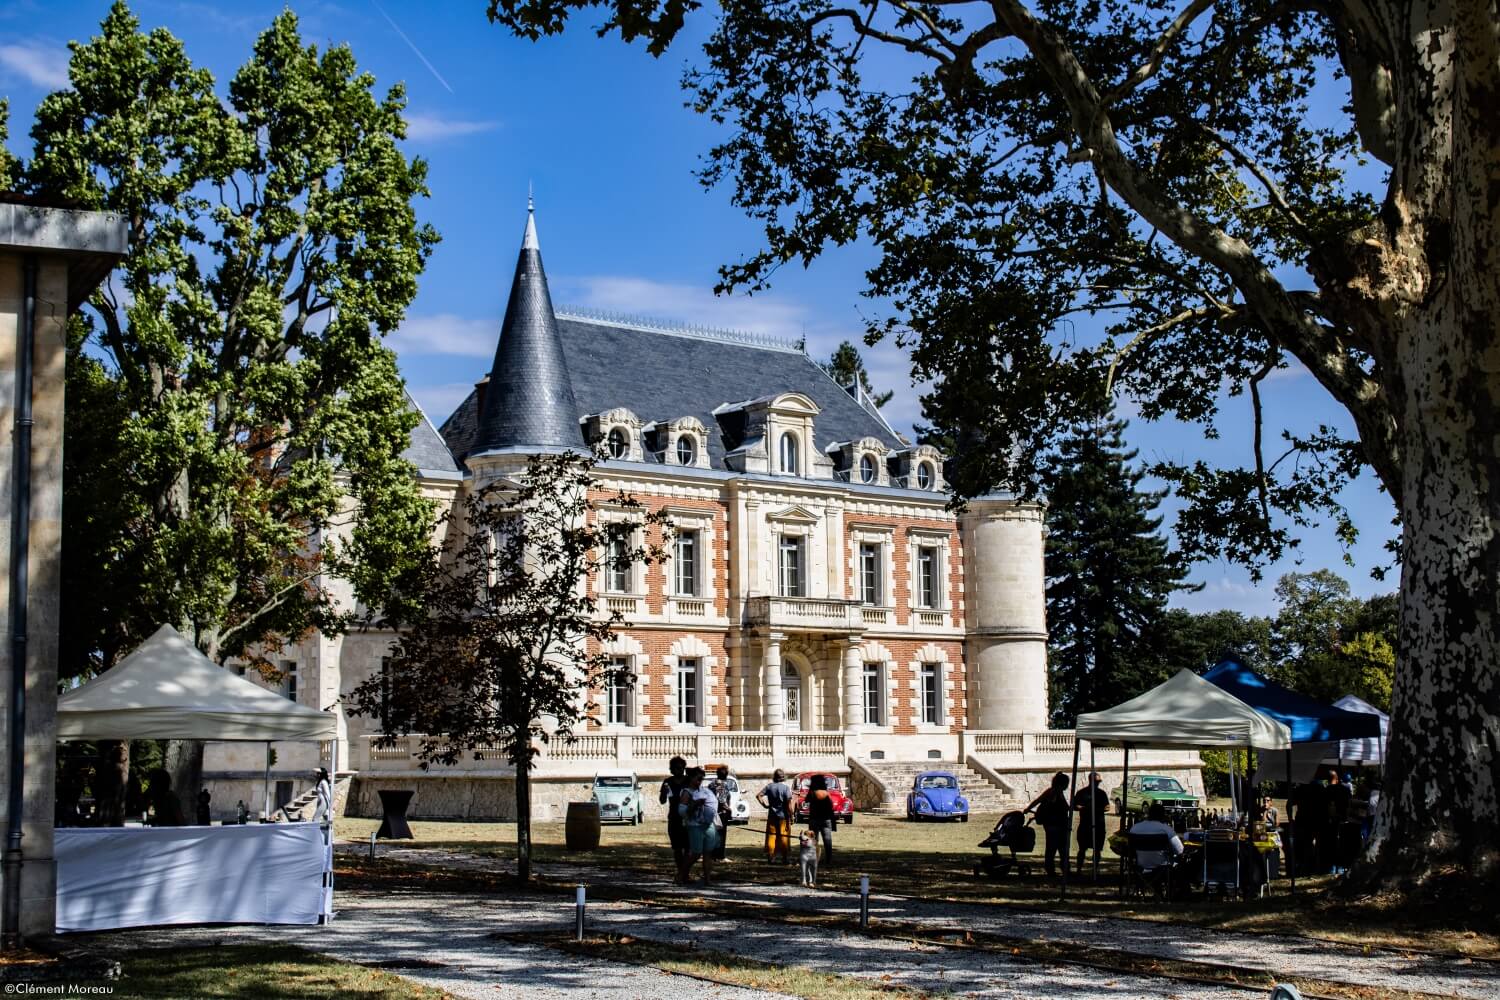 Château Lamothe-Bergeron